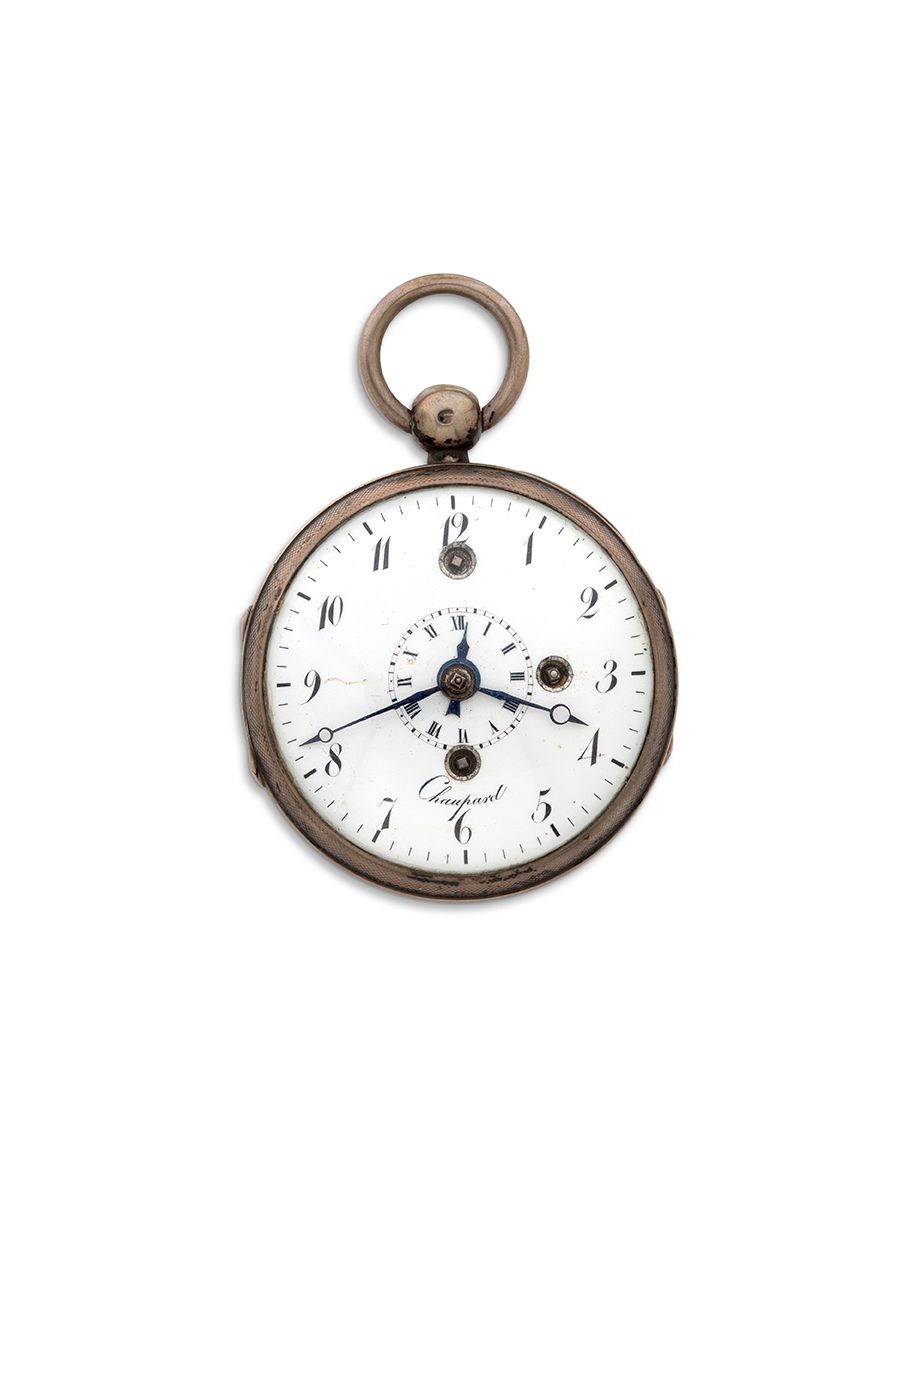 CHAUPARD, Paris Reloj plateado con función de alarma
Caja con doble bisagra, tot&hellip;